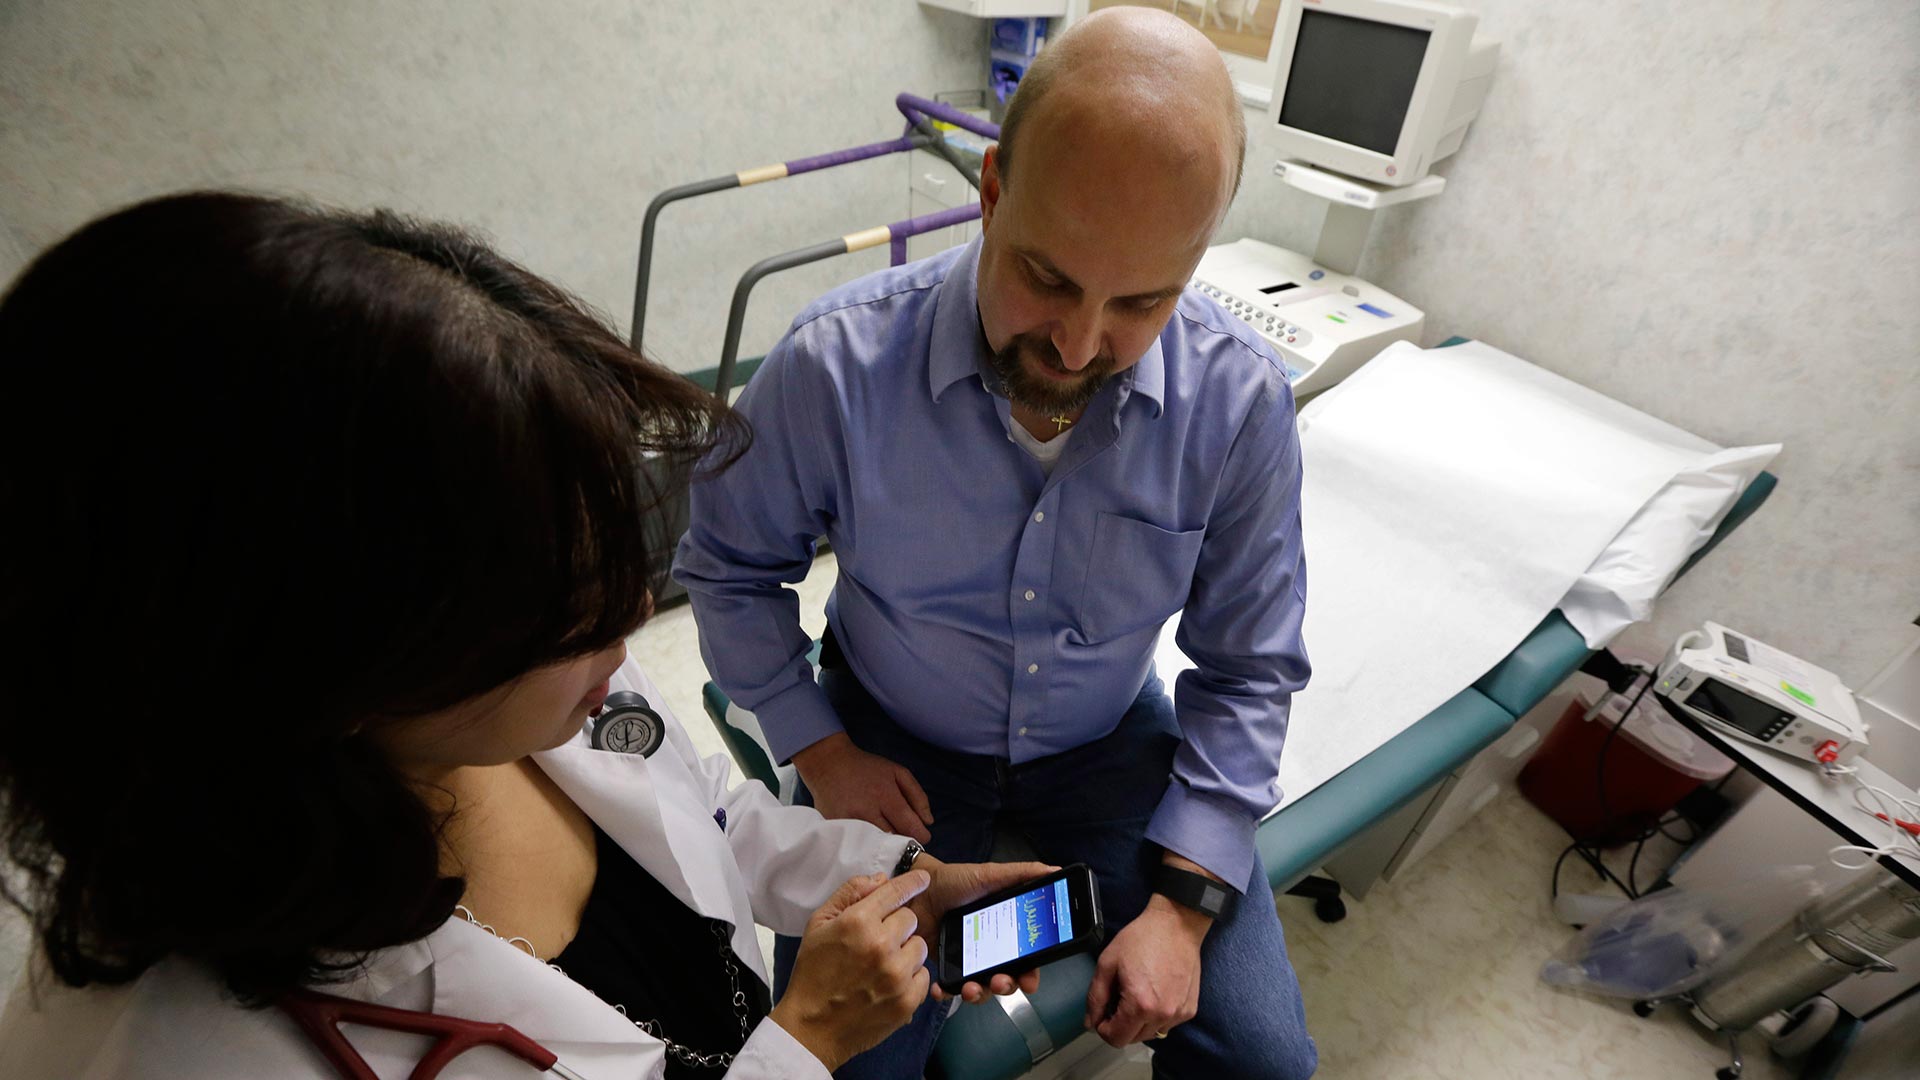 Las 'apps' de salud ponen en riesgo millones de datos personales